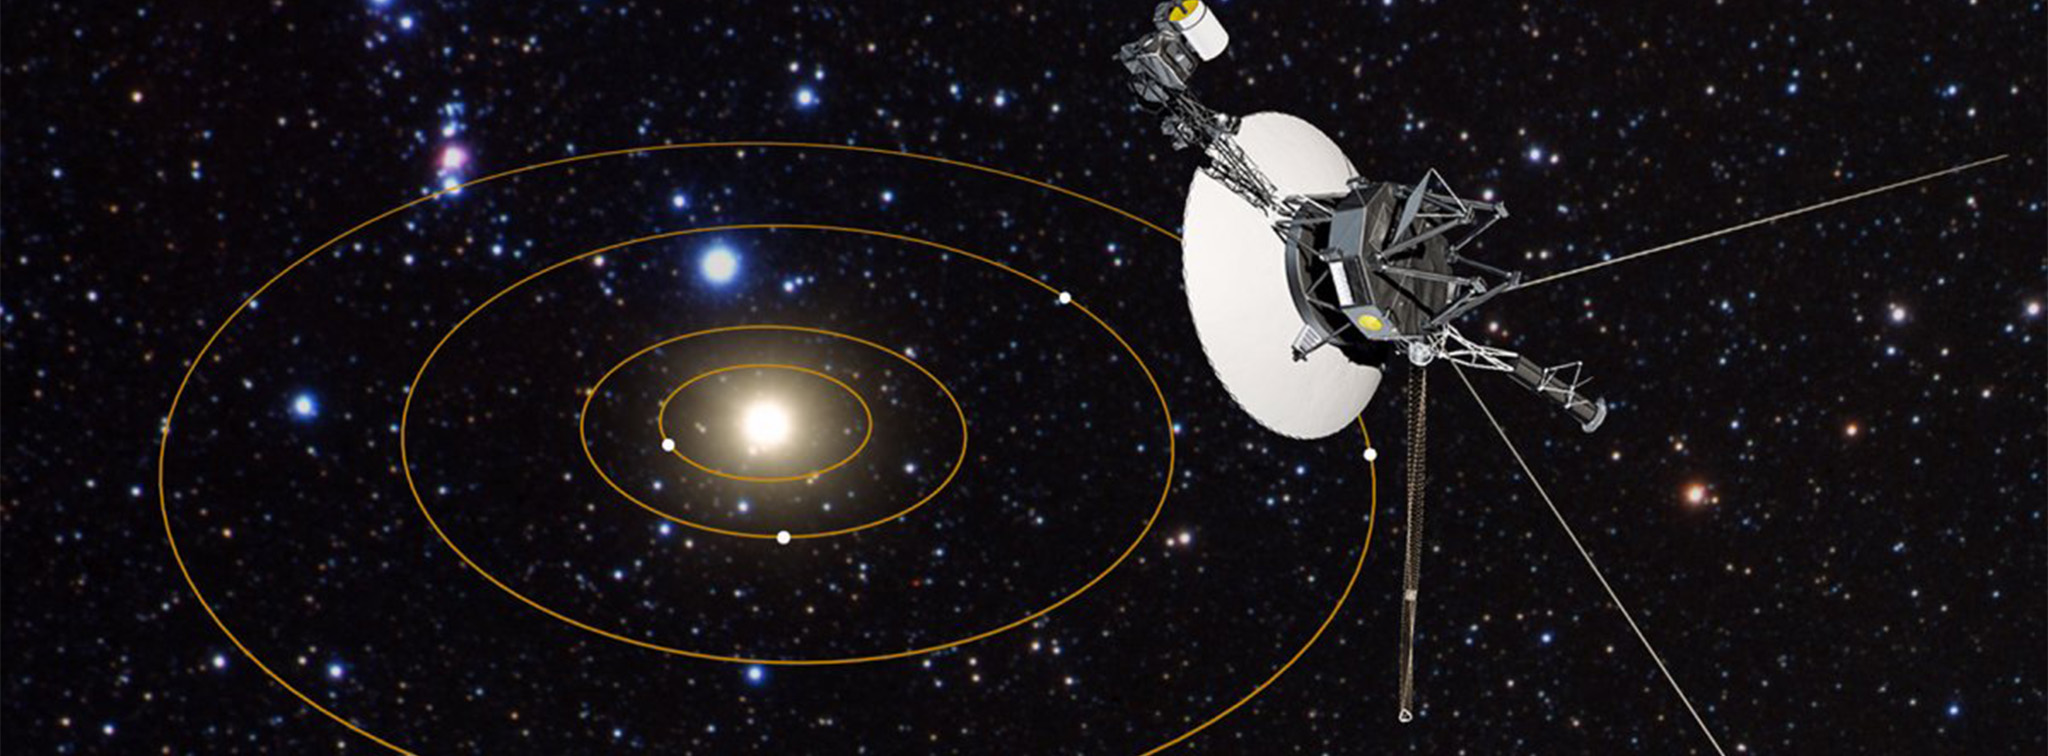 Vệ tinh Voyager có thể sẽ là bằng chứng cuối cùng chứng tỏ sự hiện diện của con người trong vũ trụ